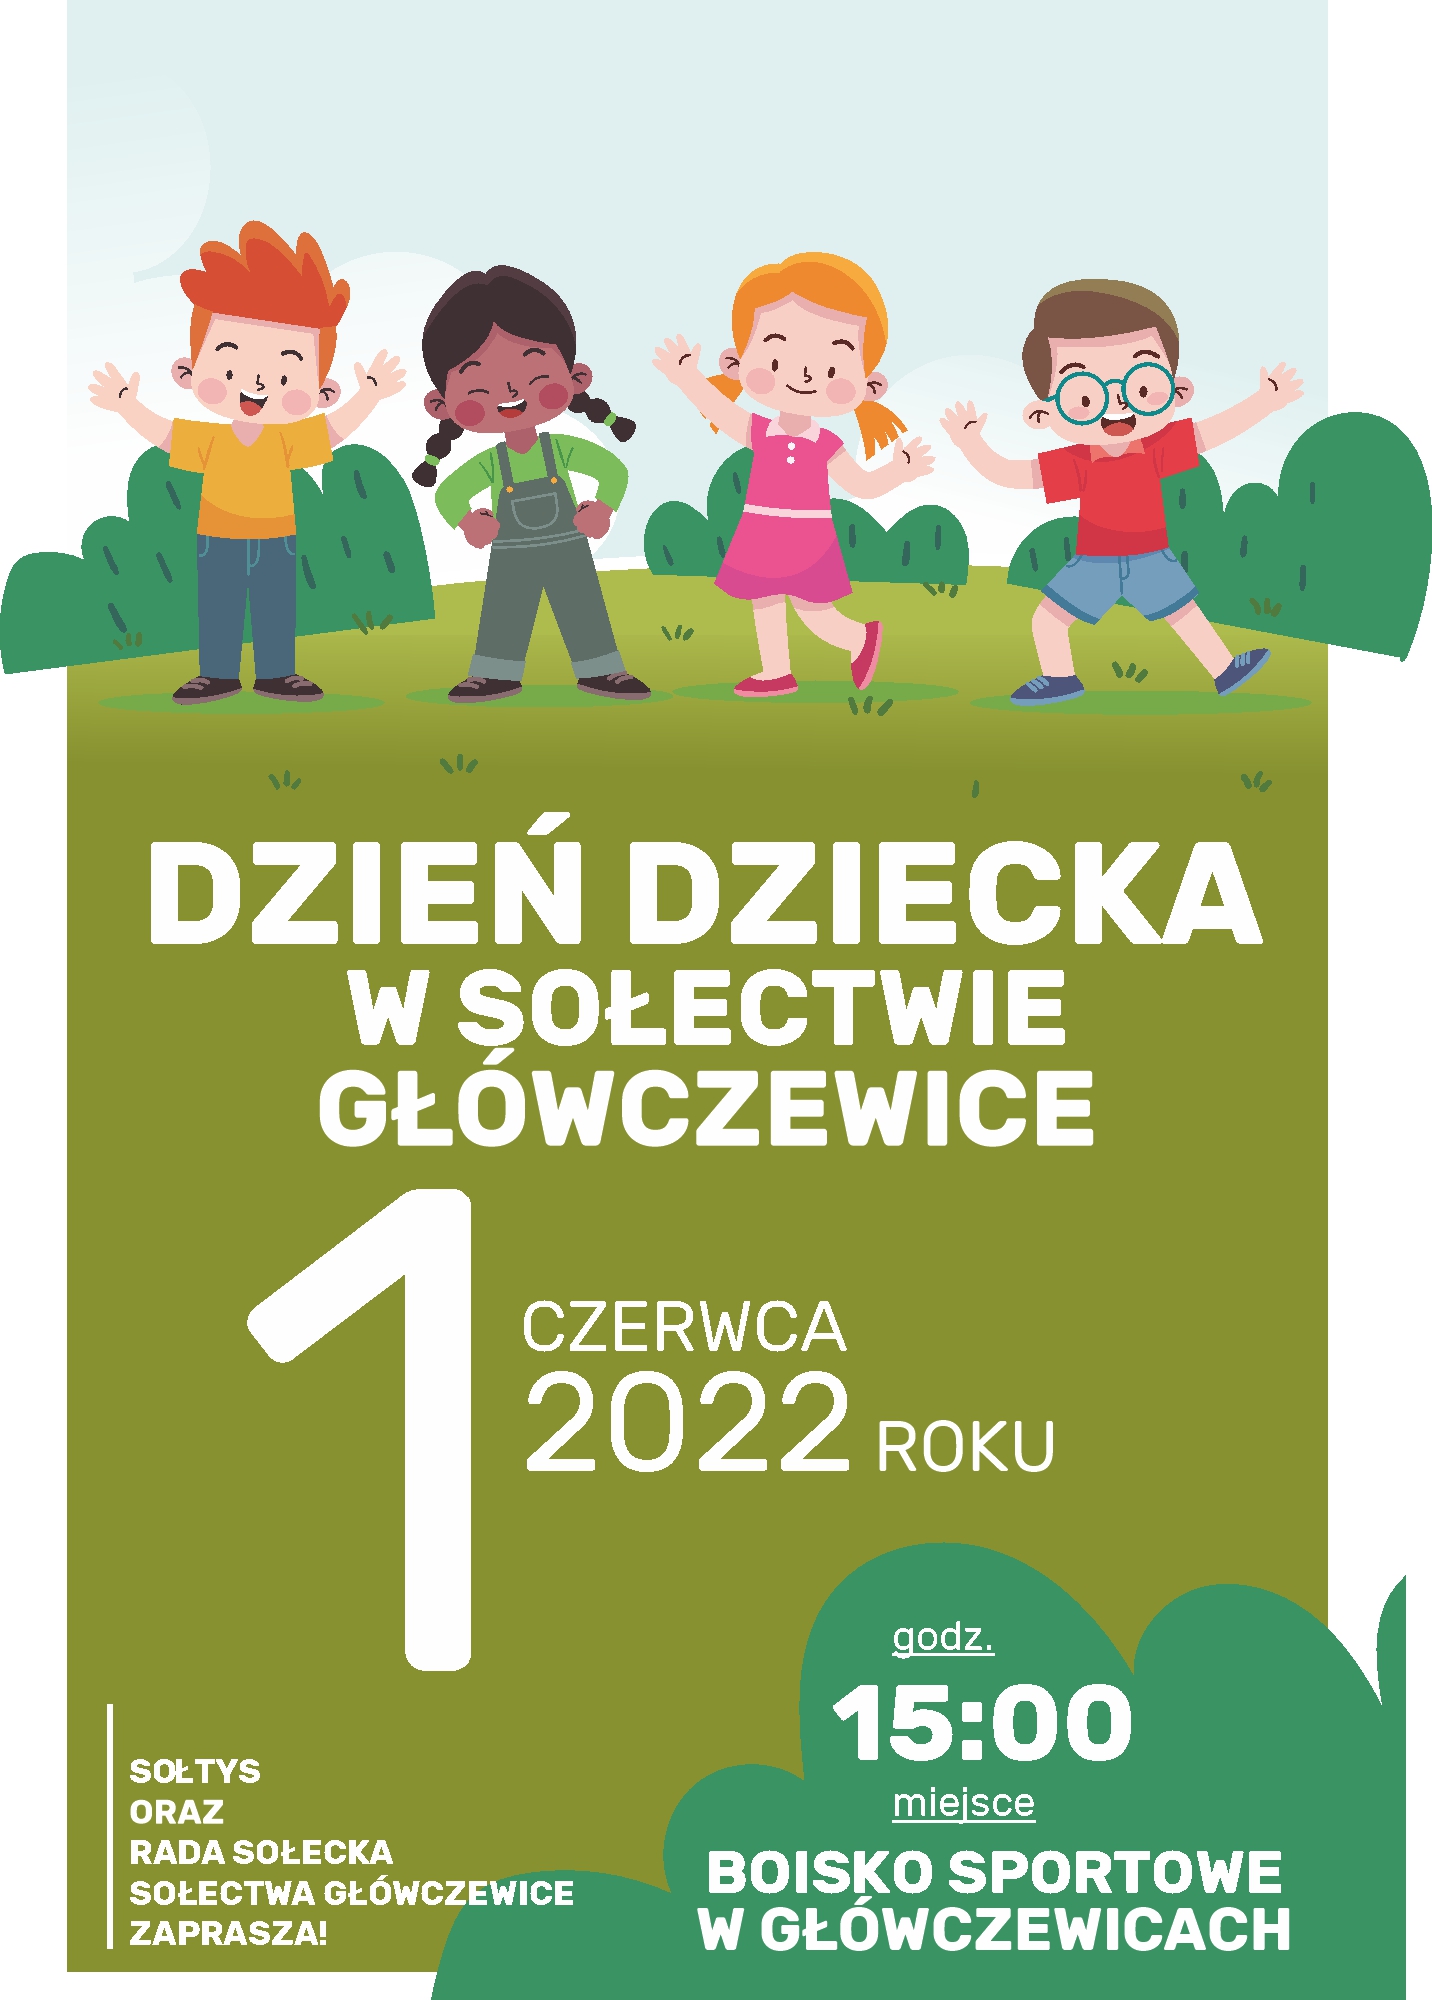 Dzień_Dziecka__Główczewice.jpg